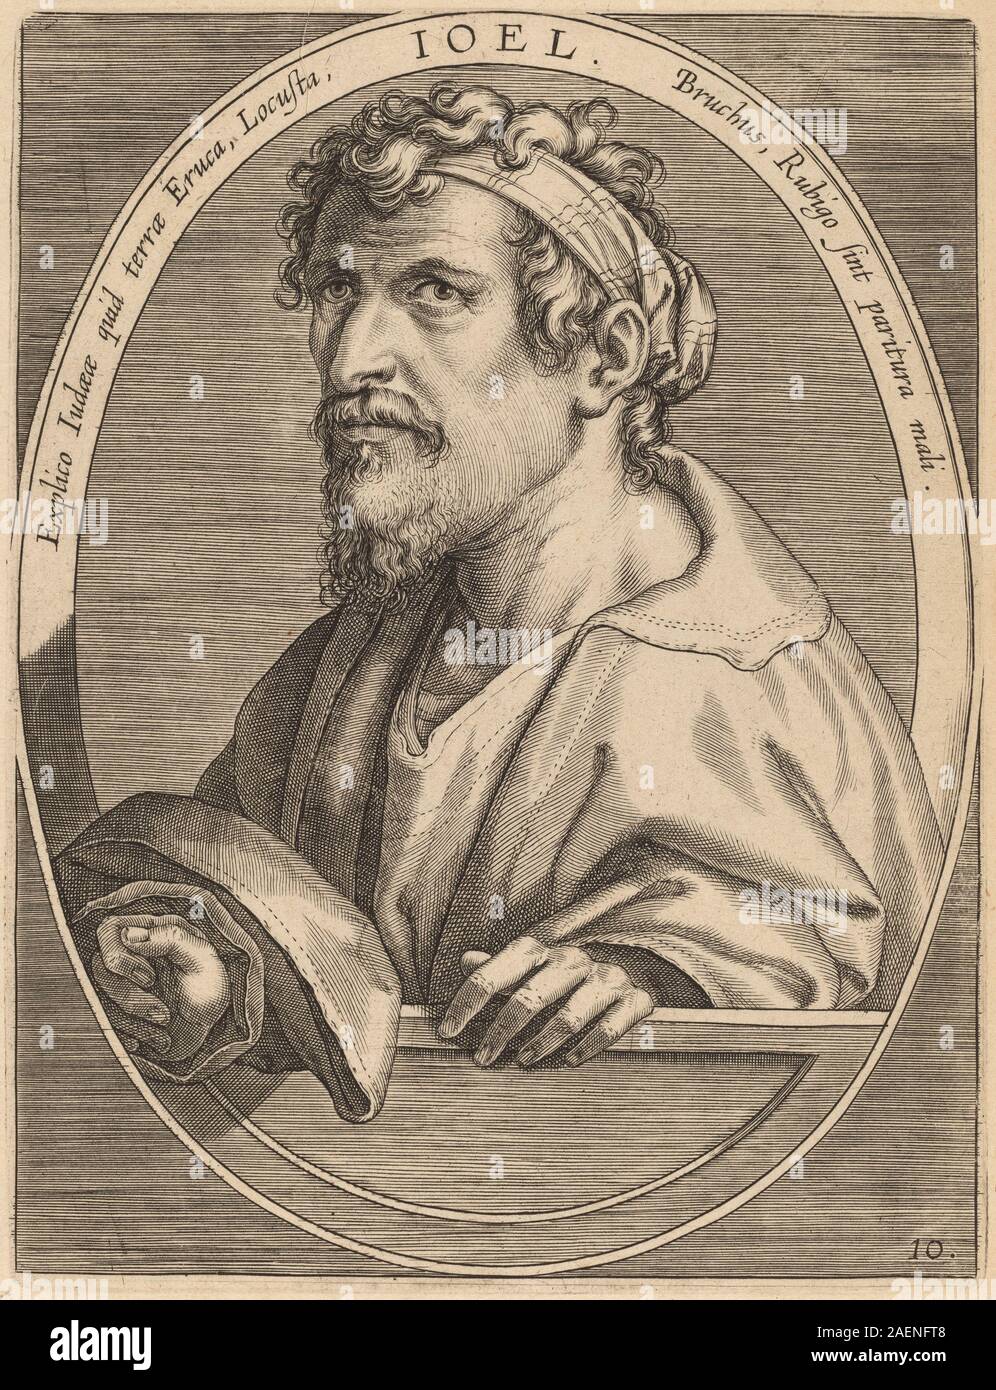 Theodor Galle after Jan van der Straet, Joel, published 1613, Joel; published 1613 Stock Photo